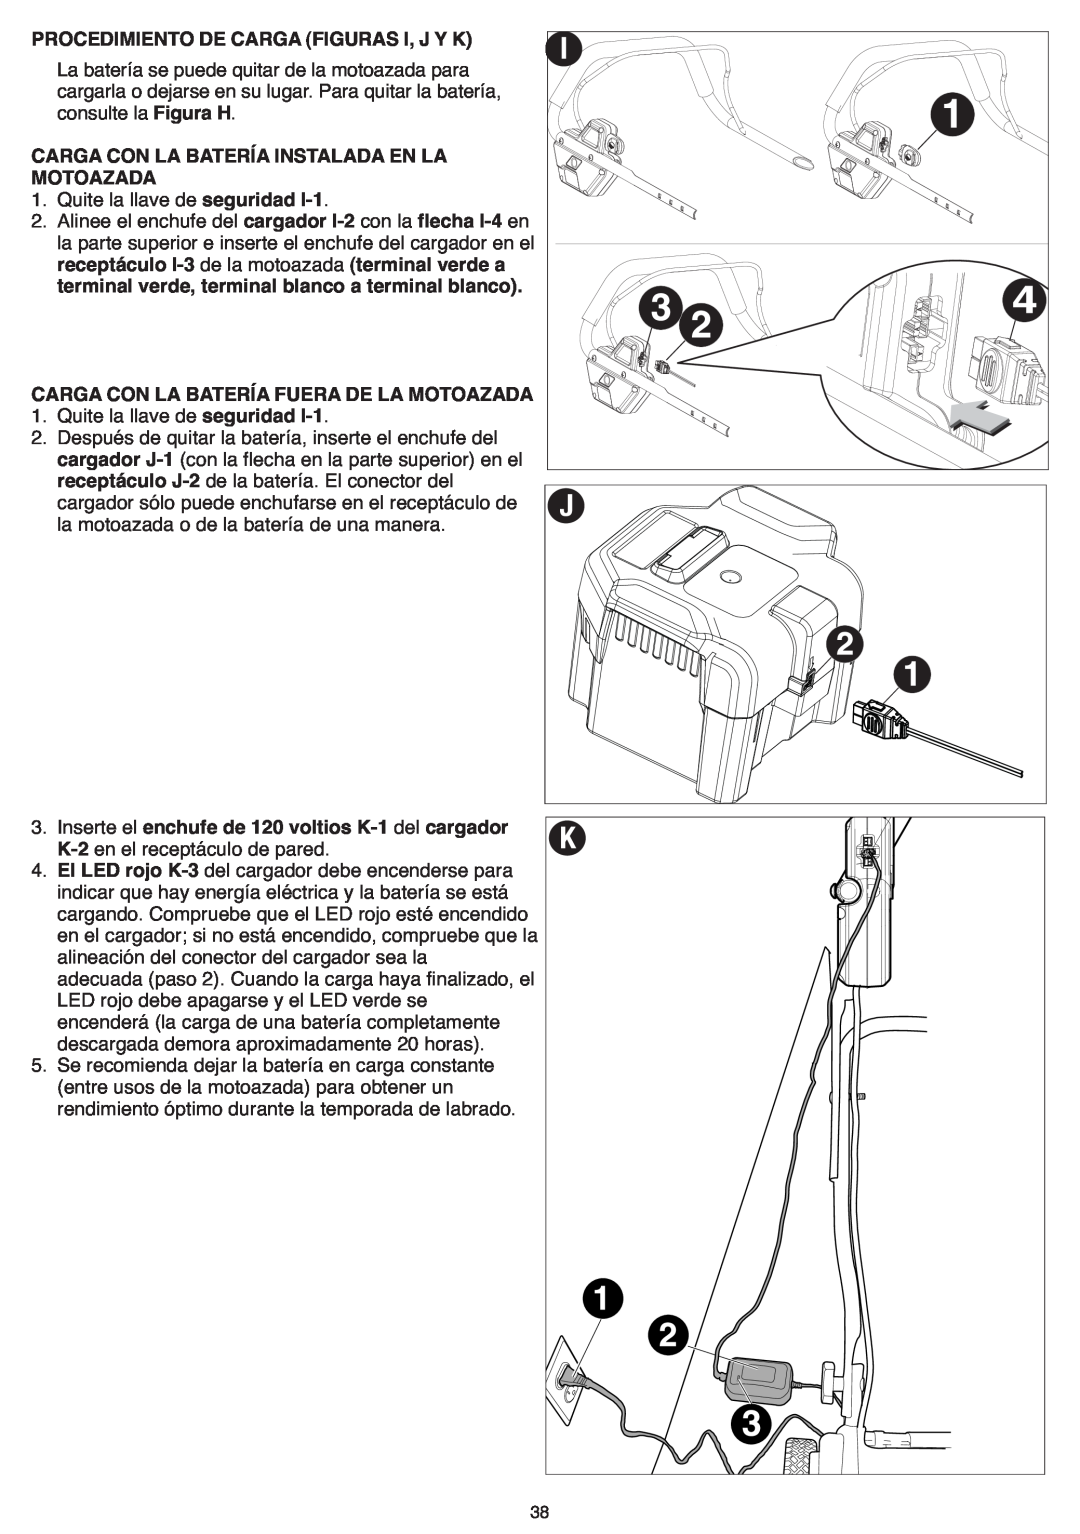 Black & Decker CTL36 instruction manual Carga Con La Bateríainstalada En La, MOTOAZADA seguridad 